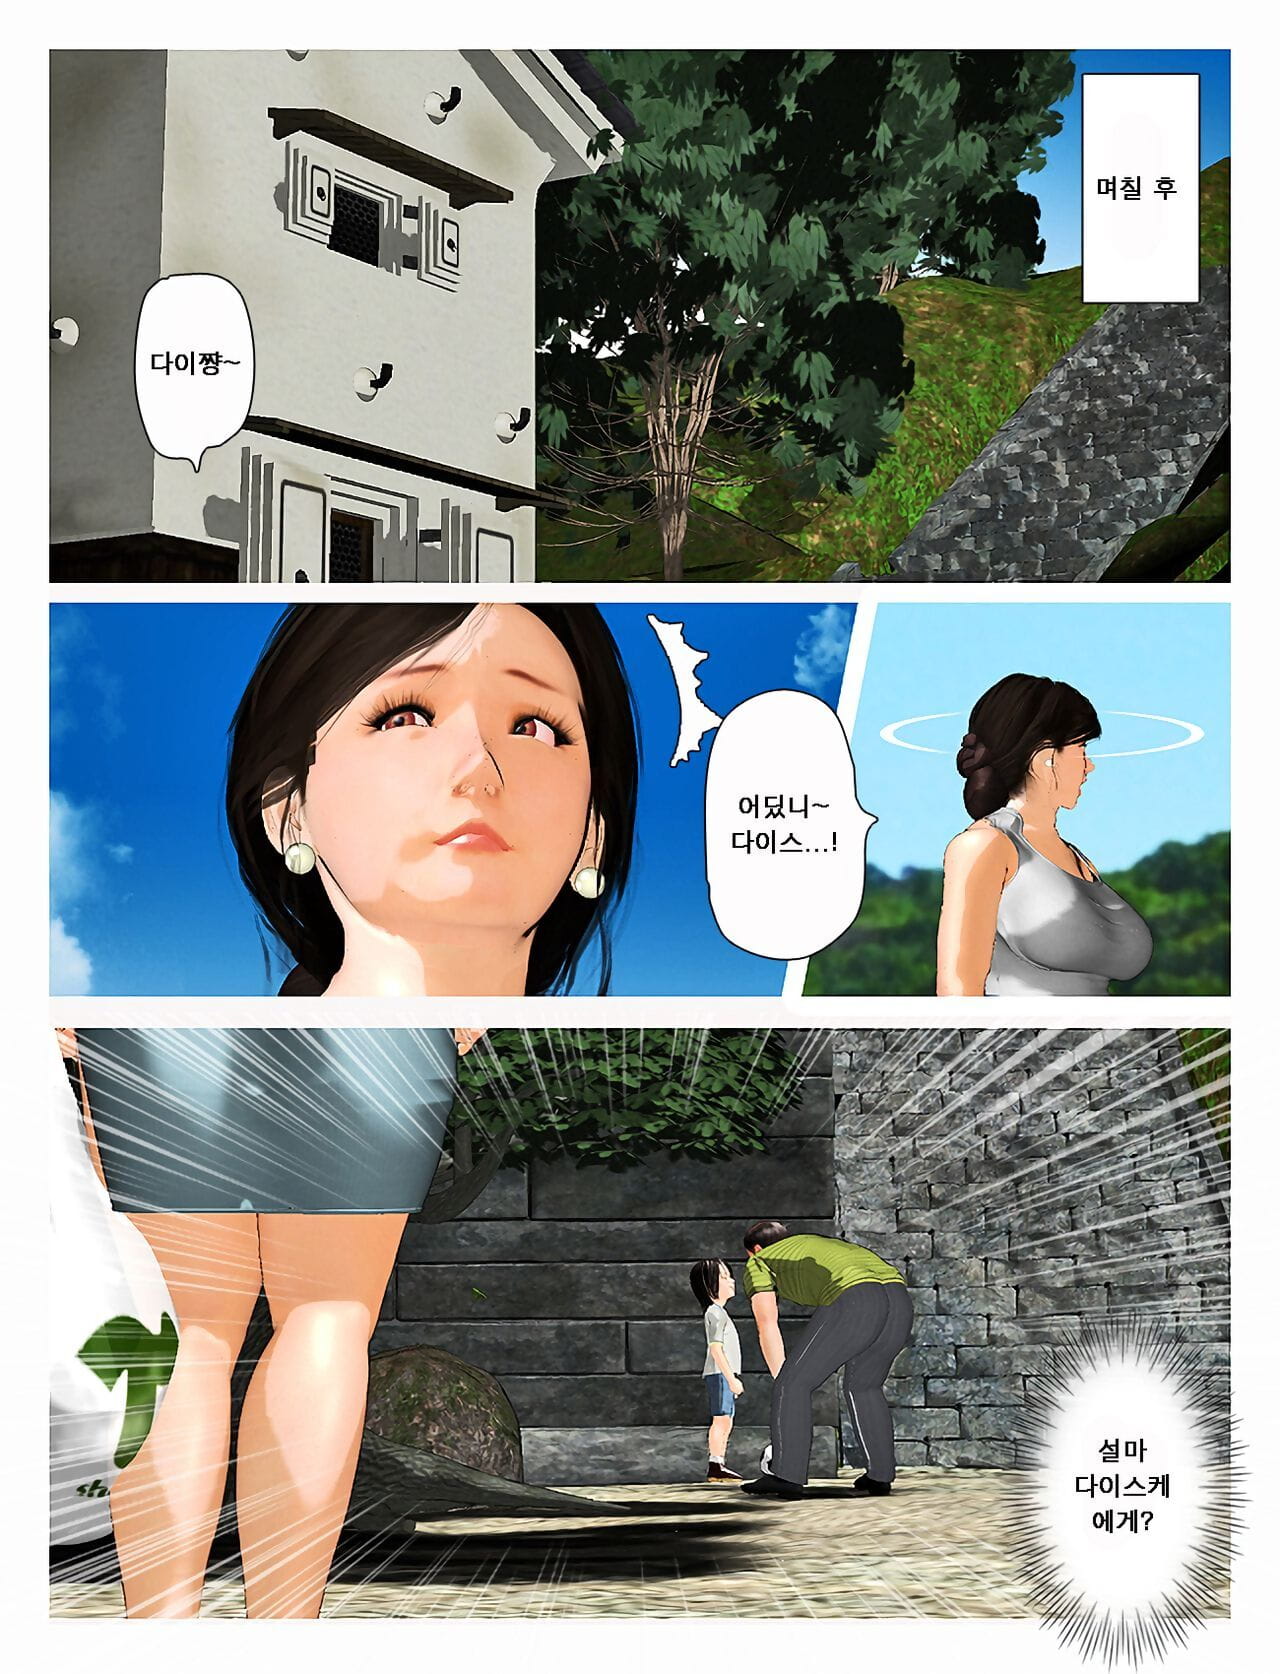 Kyou no misako San 2019:2 오늘의 미사코씨 2019:2 page 1